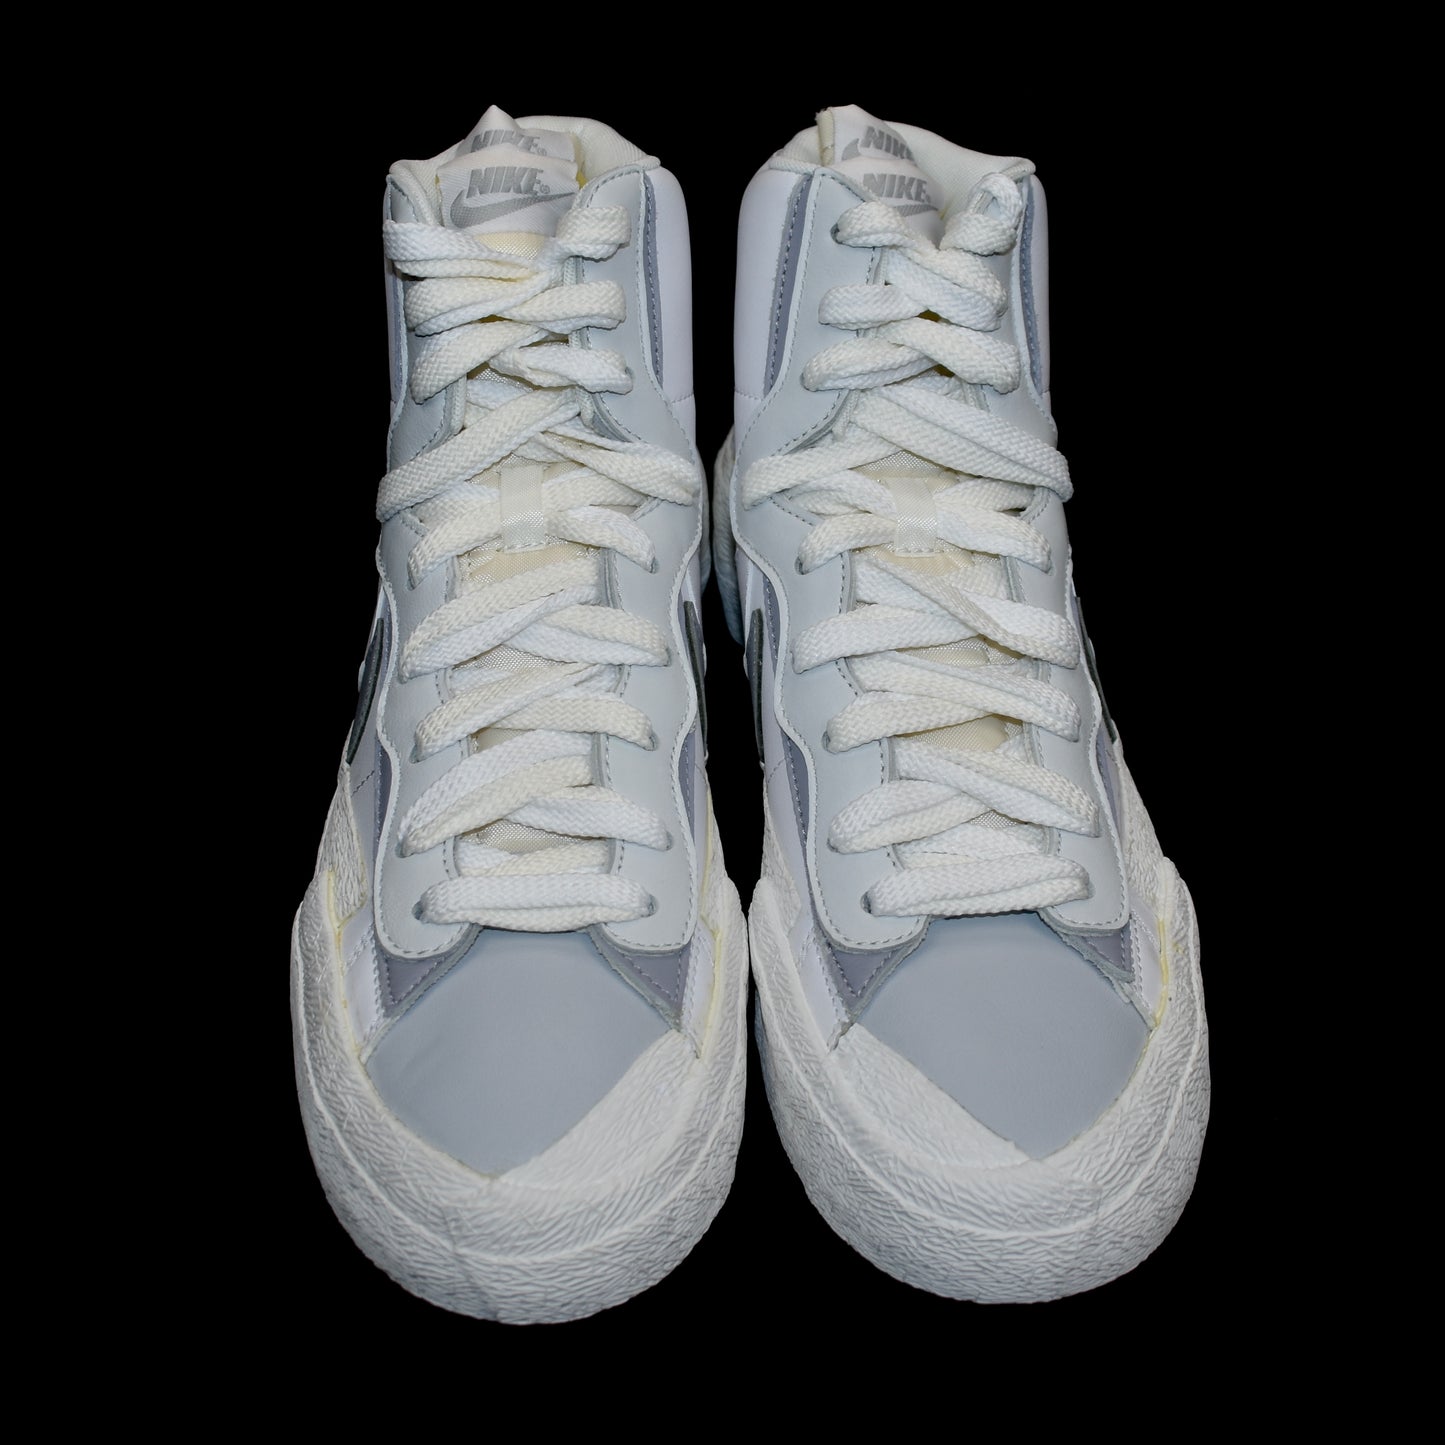 Nike x Sacai - Blazer Mid (White/Gray)